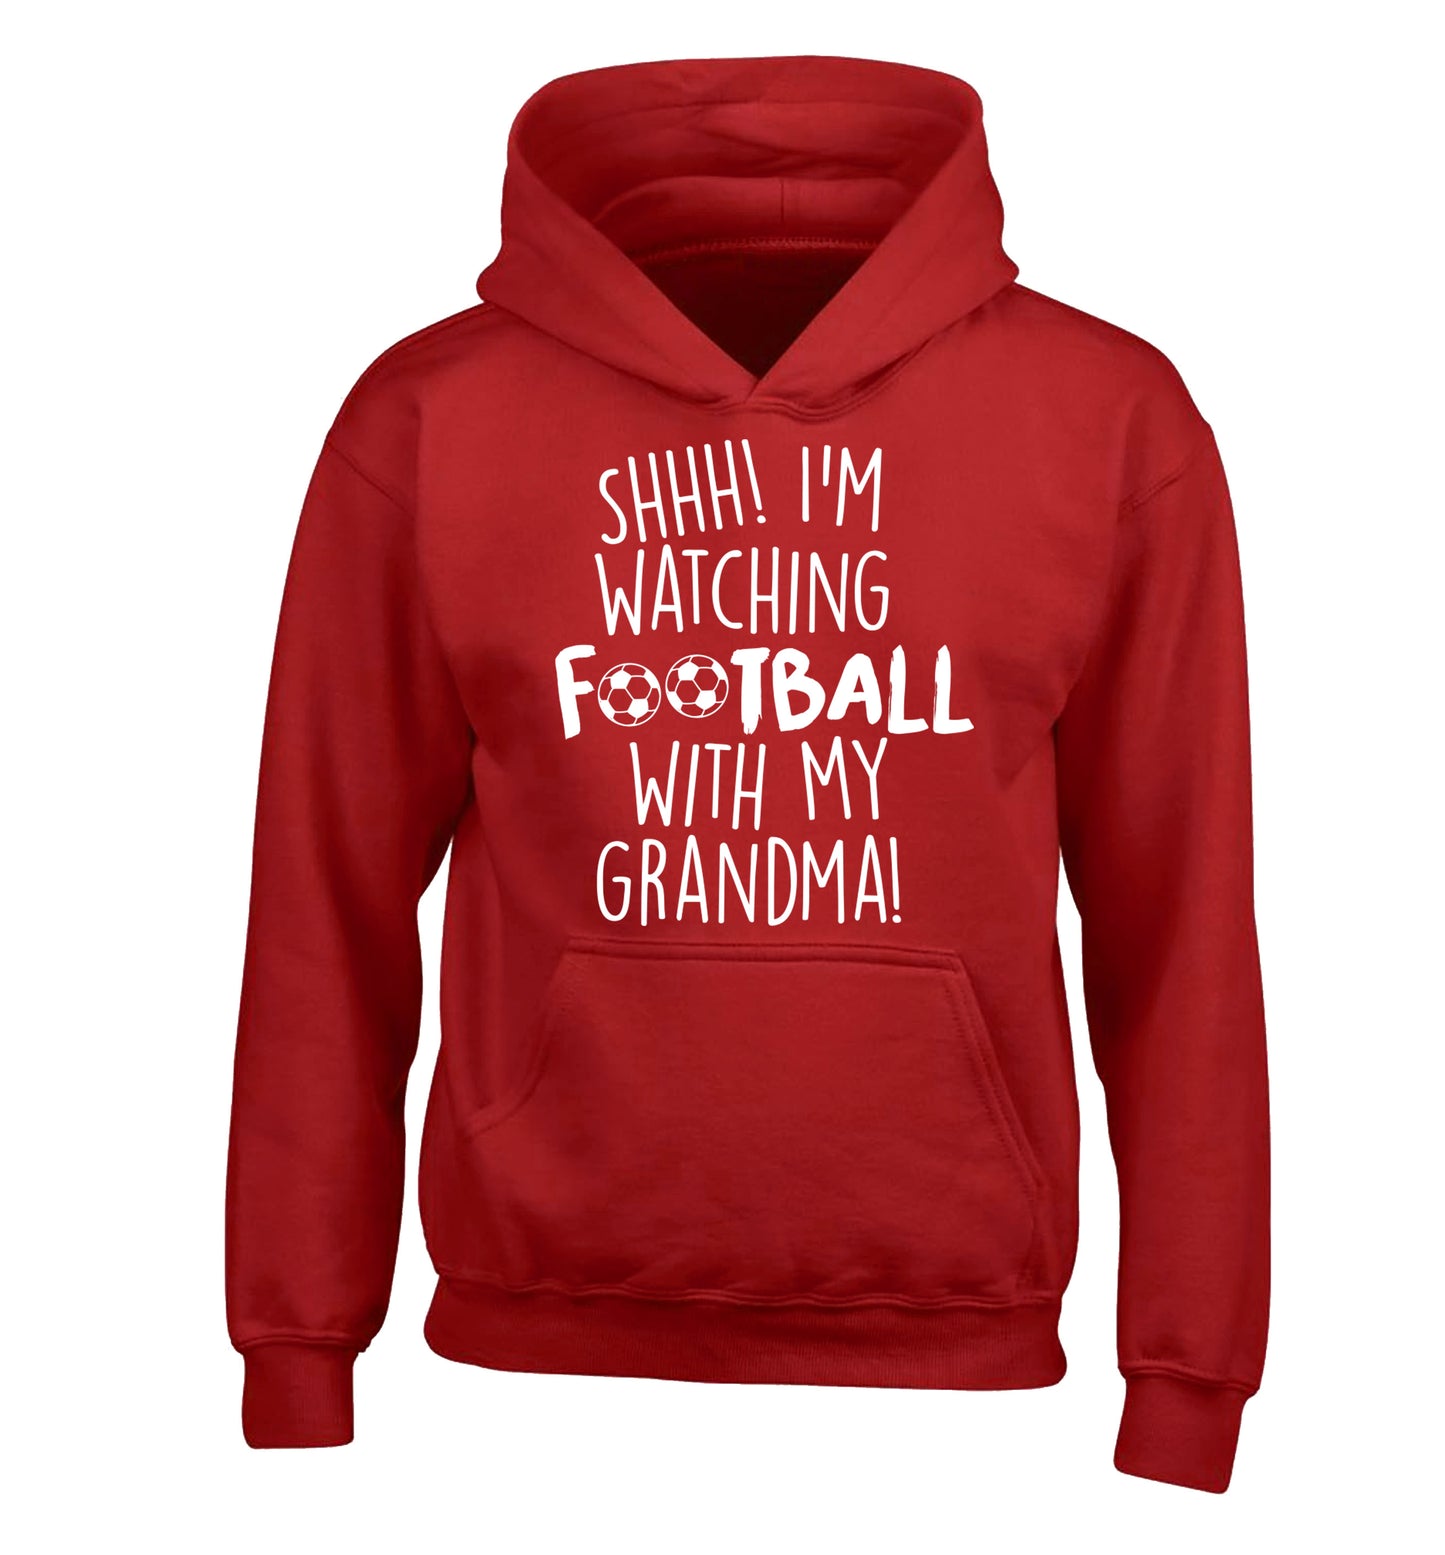 Shhh I'm watching football with my grandma children's red hoodie 12-14 Years